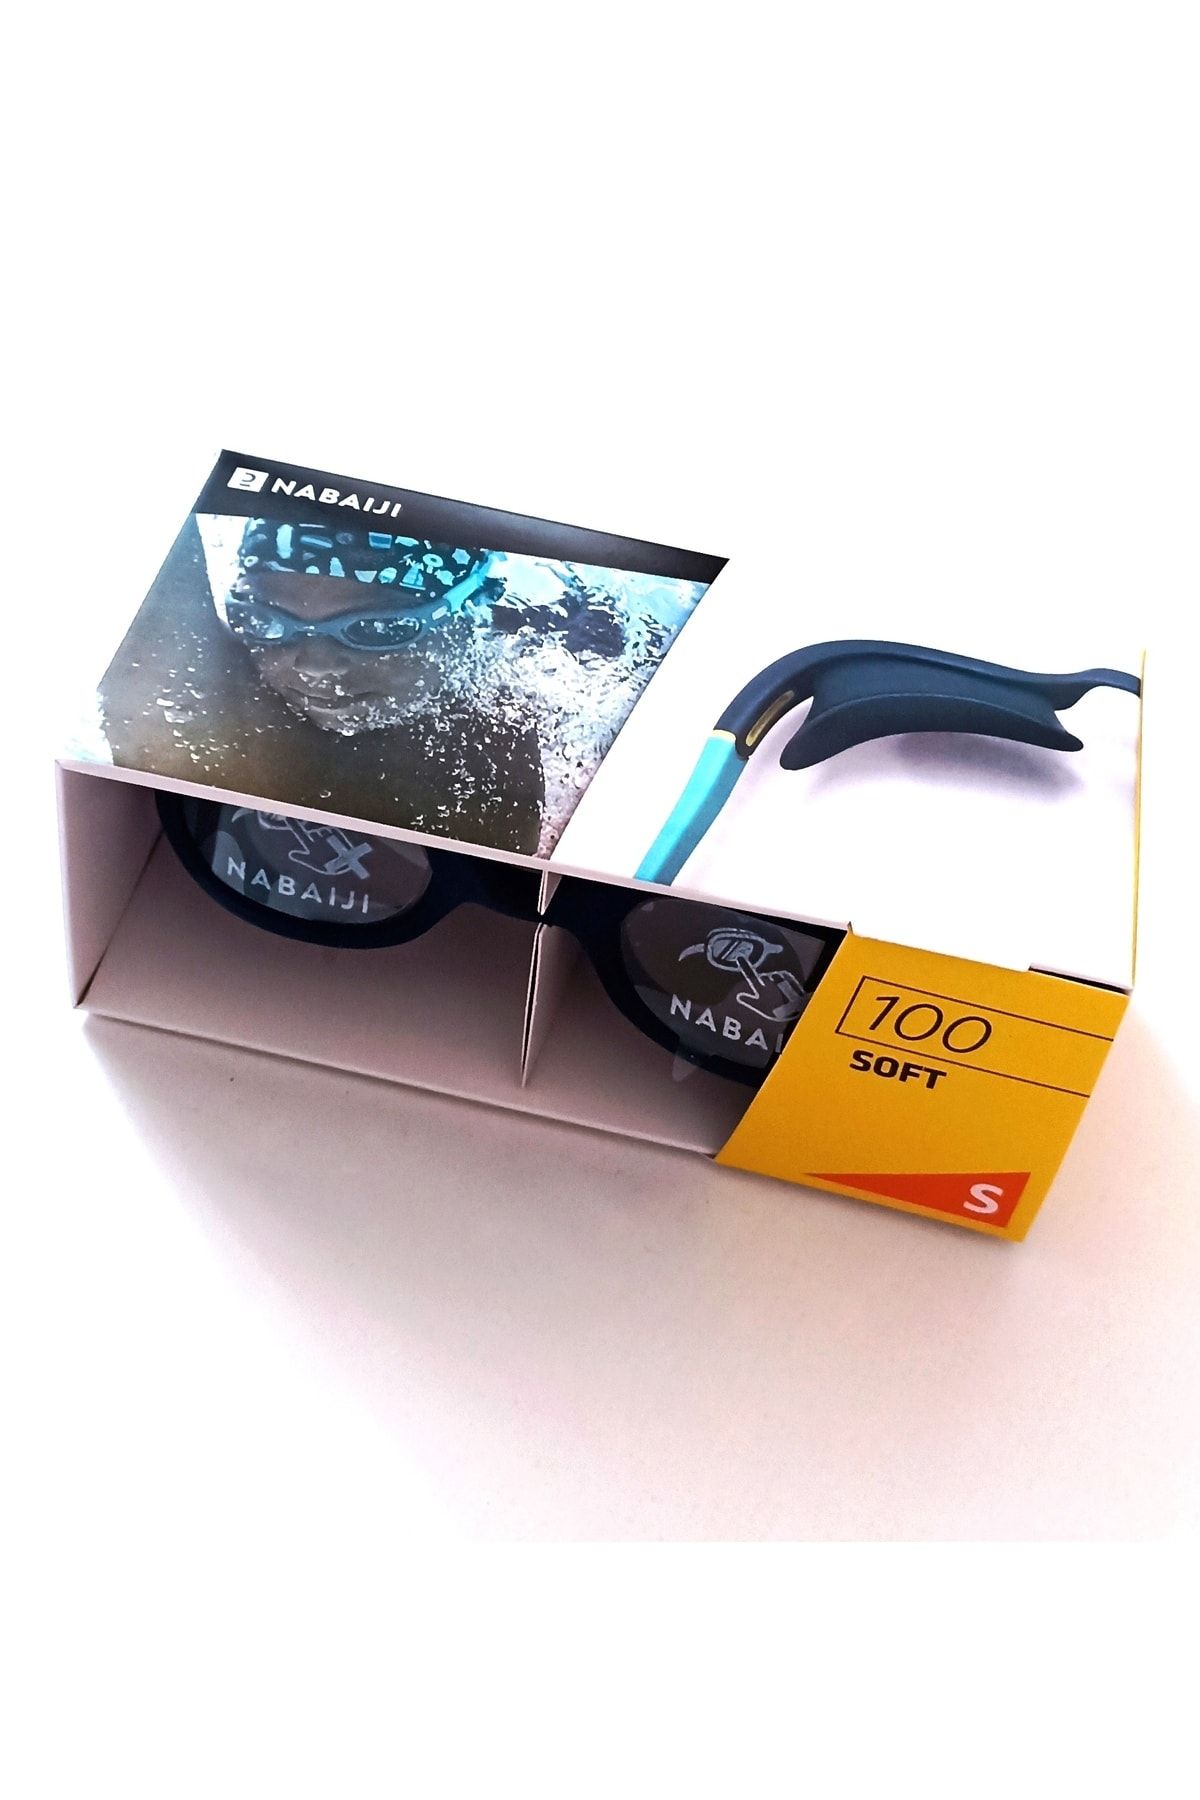 Decathlon Nabaiji Yüzücü Gözlüğü - S Boy - Mavi Sarı - 100 Soft